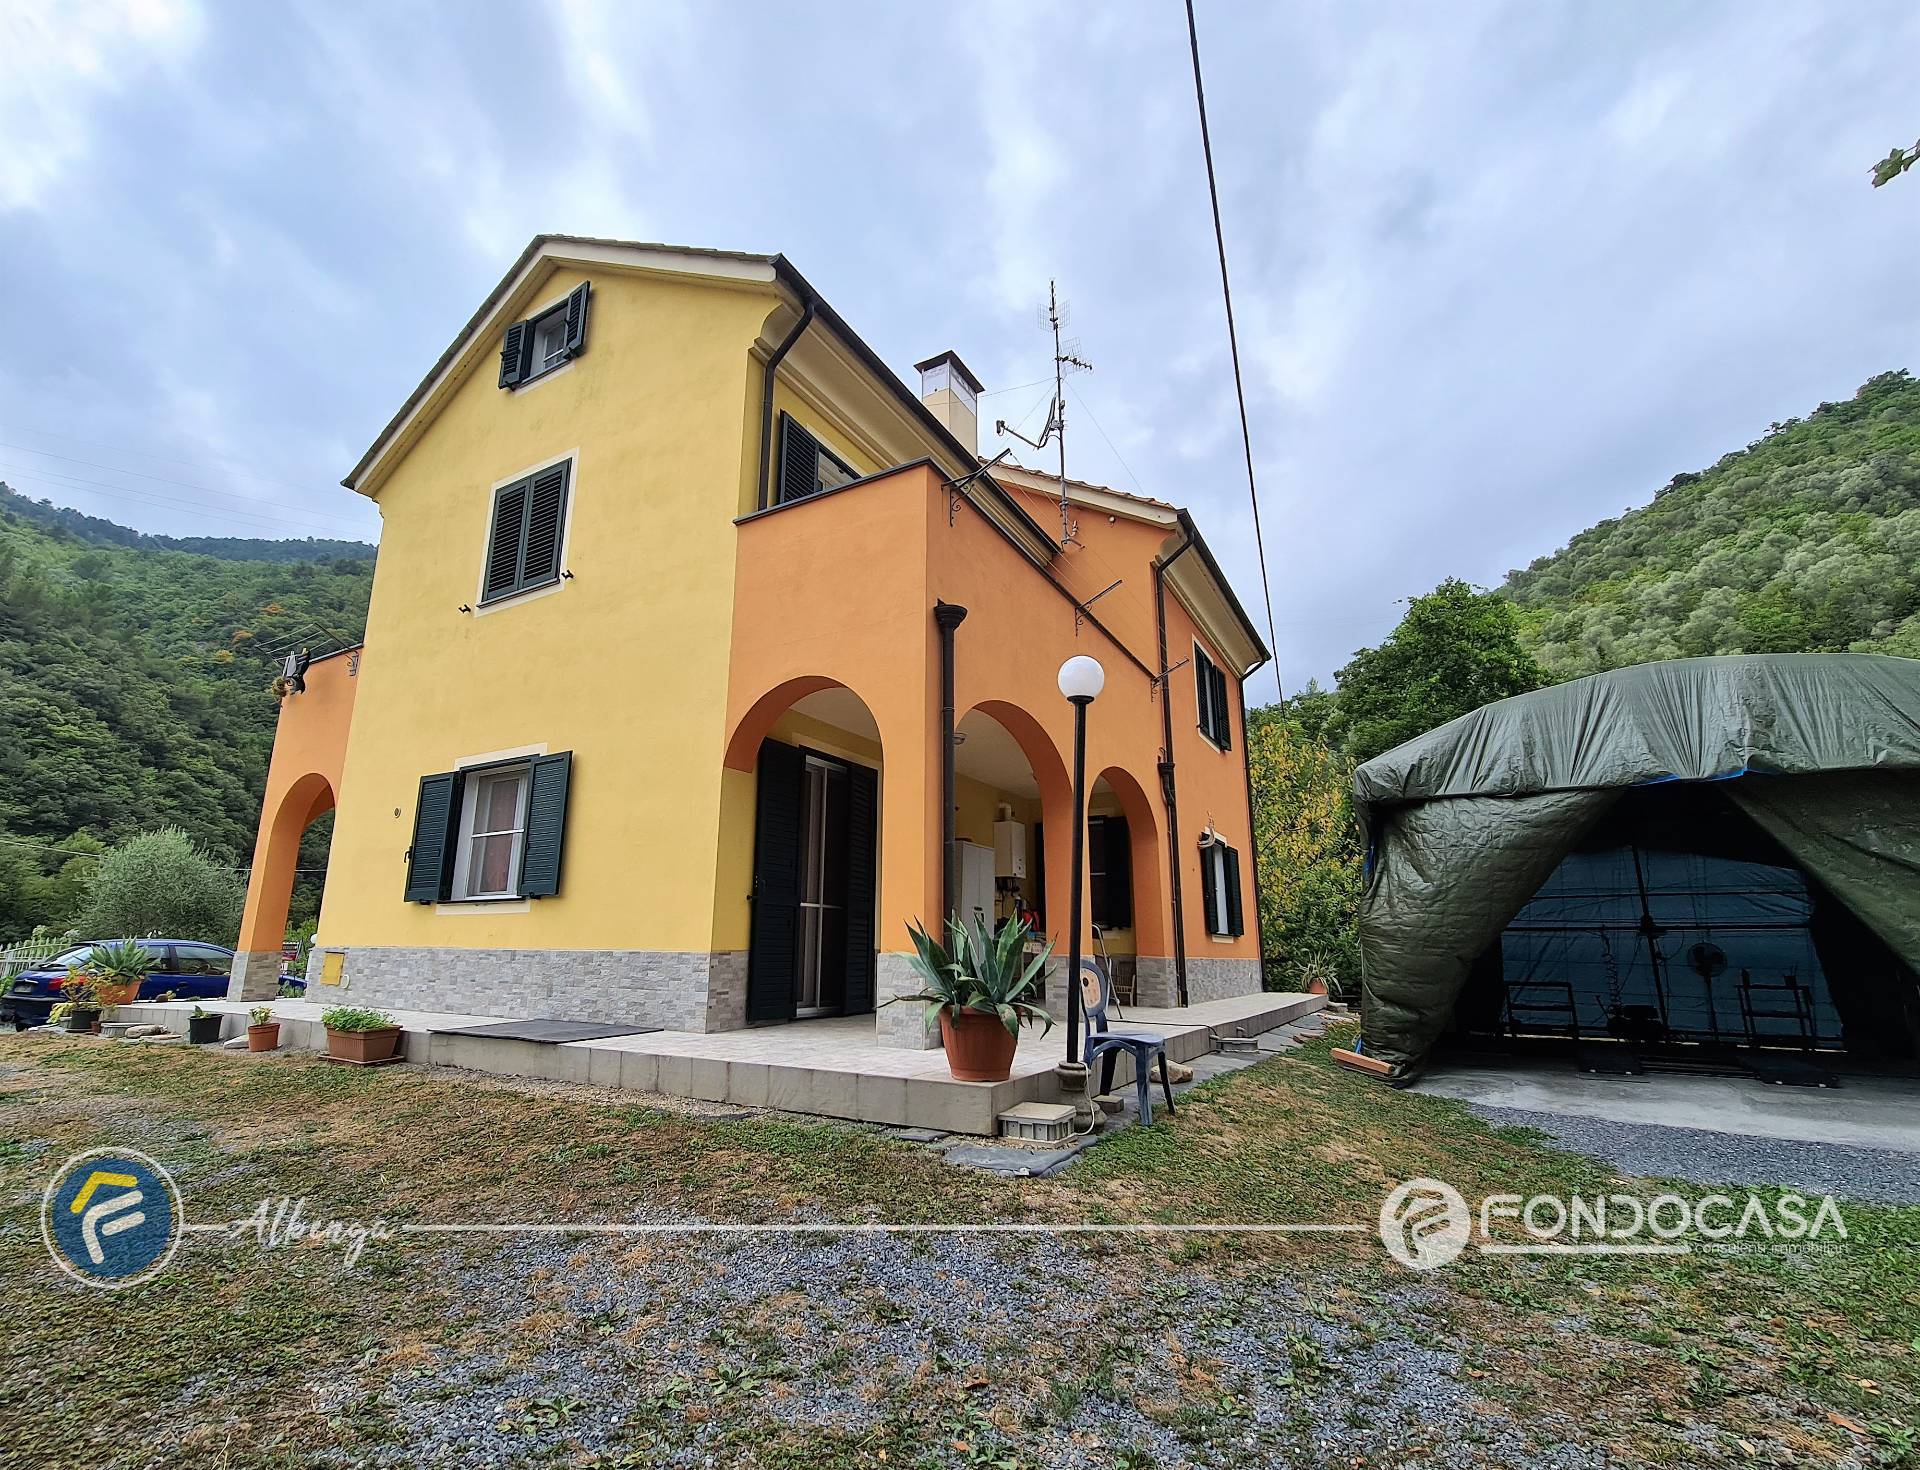 Villa Bifamiliare in vendita a Zuccarello, 7 locali, prezzo € 465.000 | CambioCasa.it